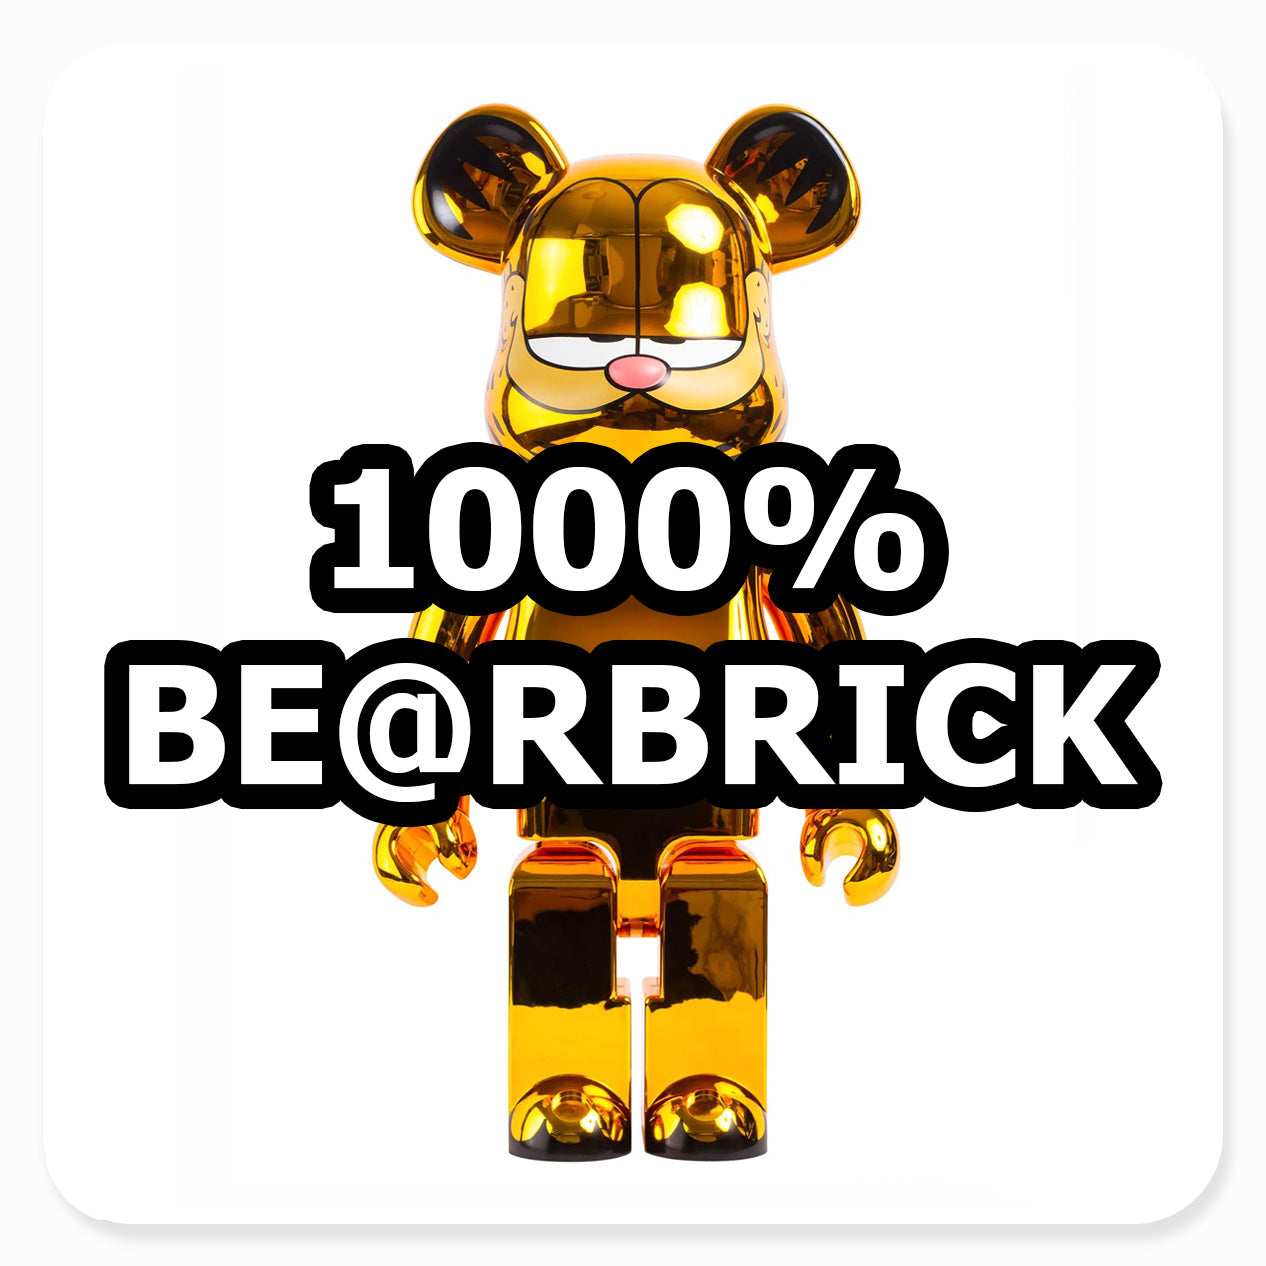 1000% BE@RBRICK